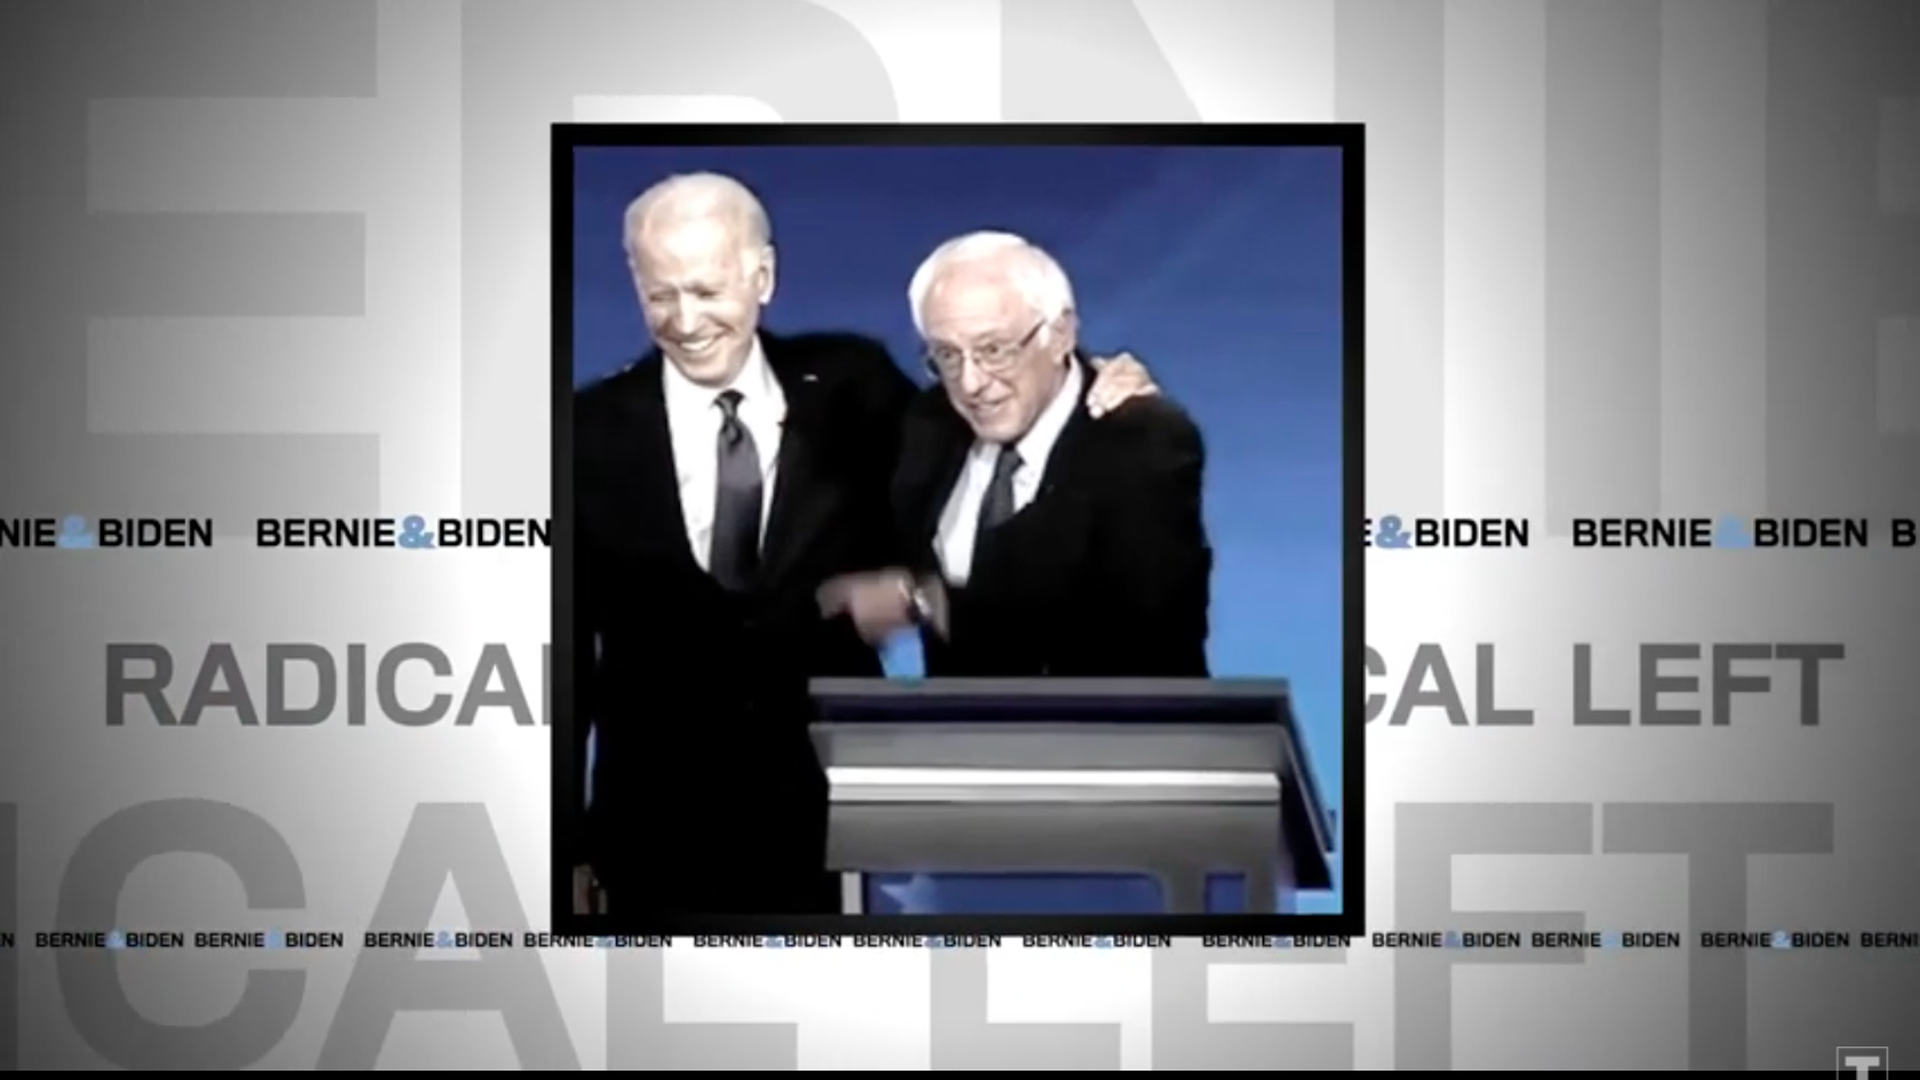 Screengrab of ad showing Joe Biden hugging Bernie Sanders